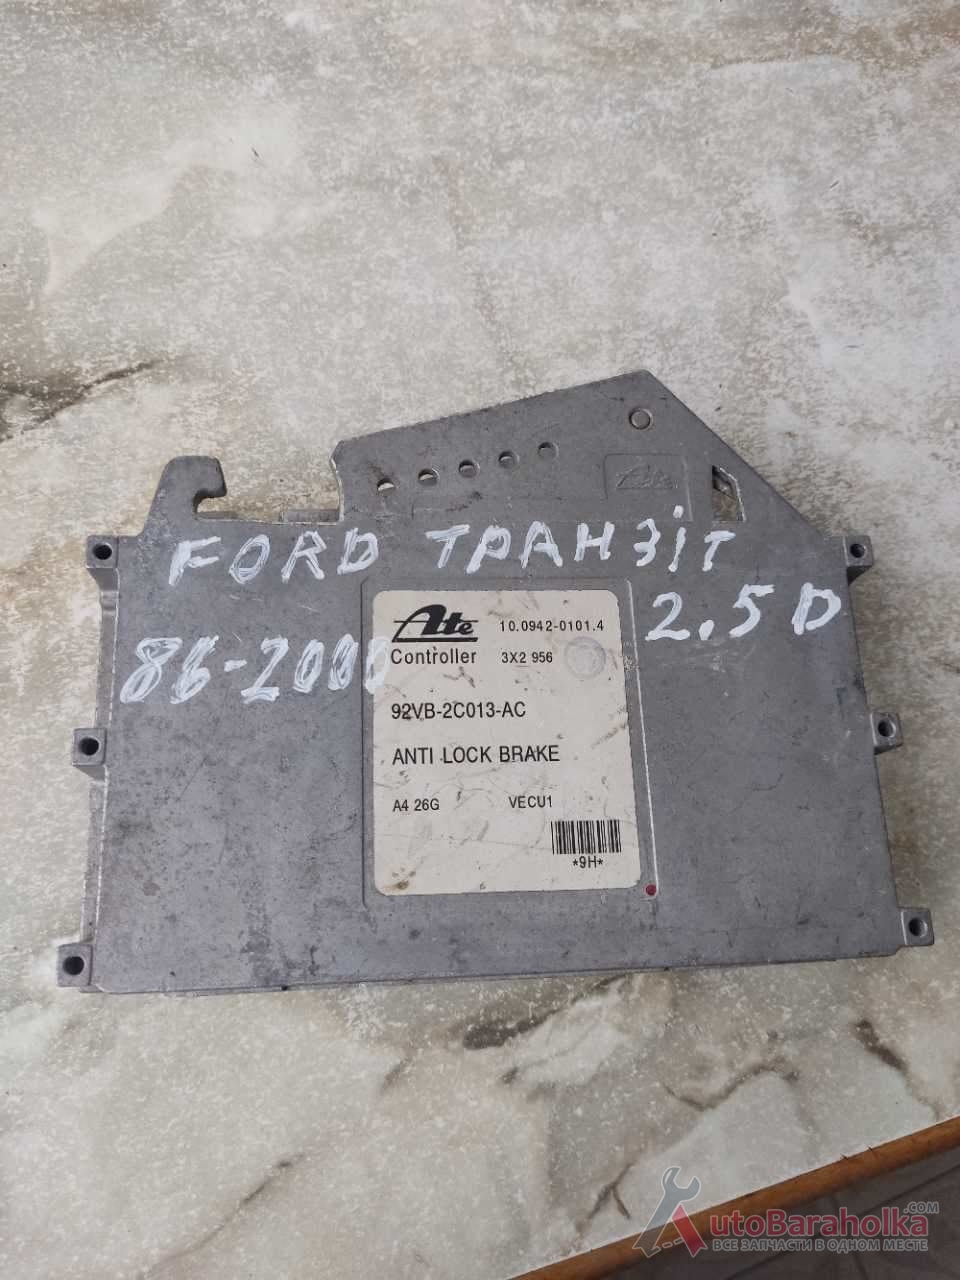 Продам ЕБУ мозги Ford Transit 1986-2000, 2.5D, 92VB2C013AC Вінниця